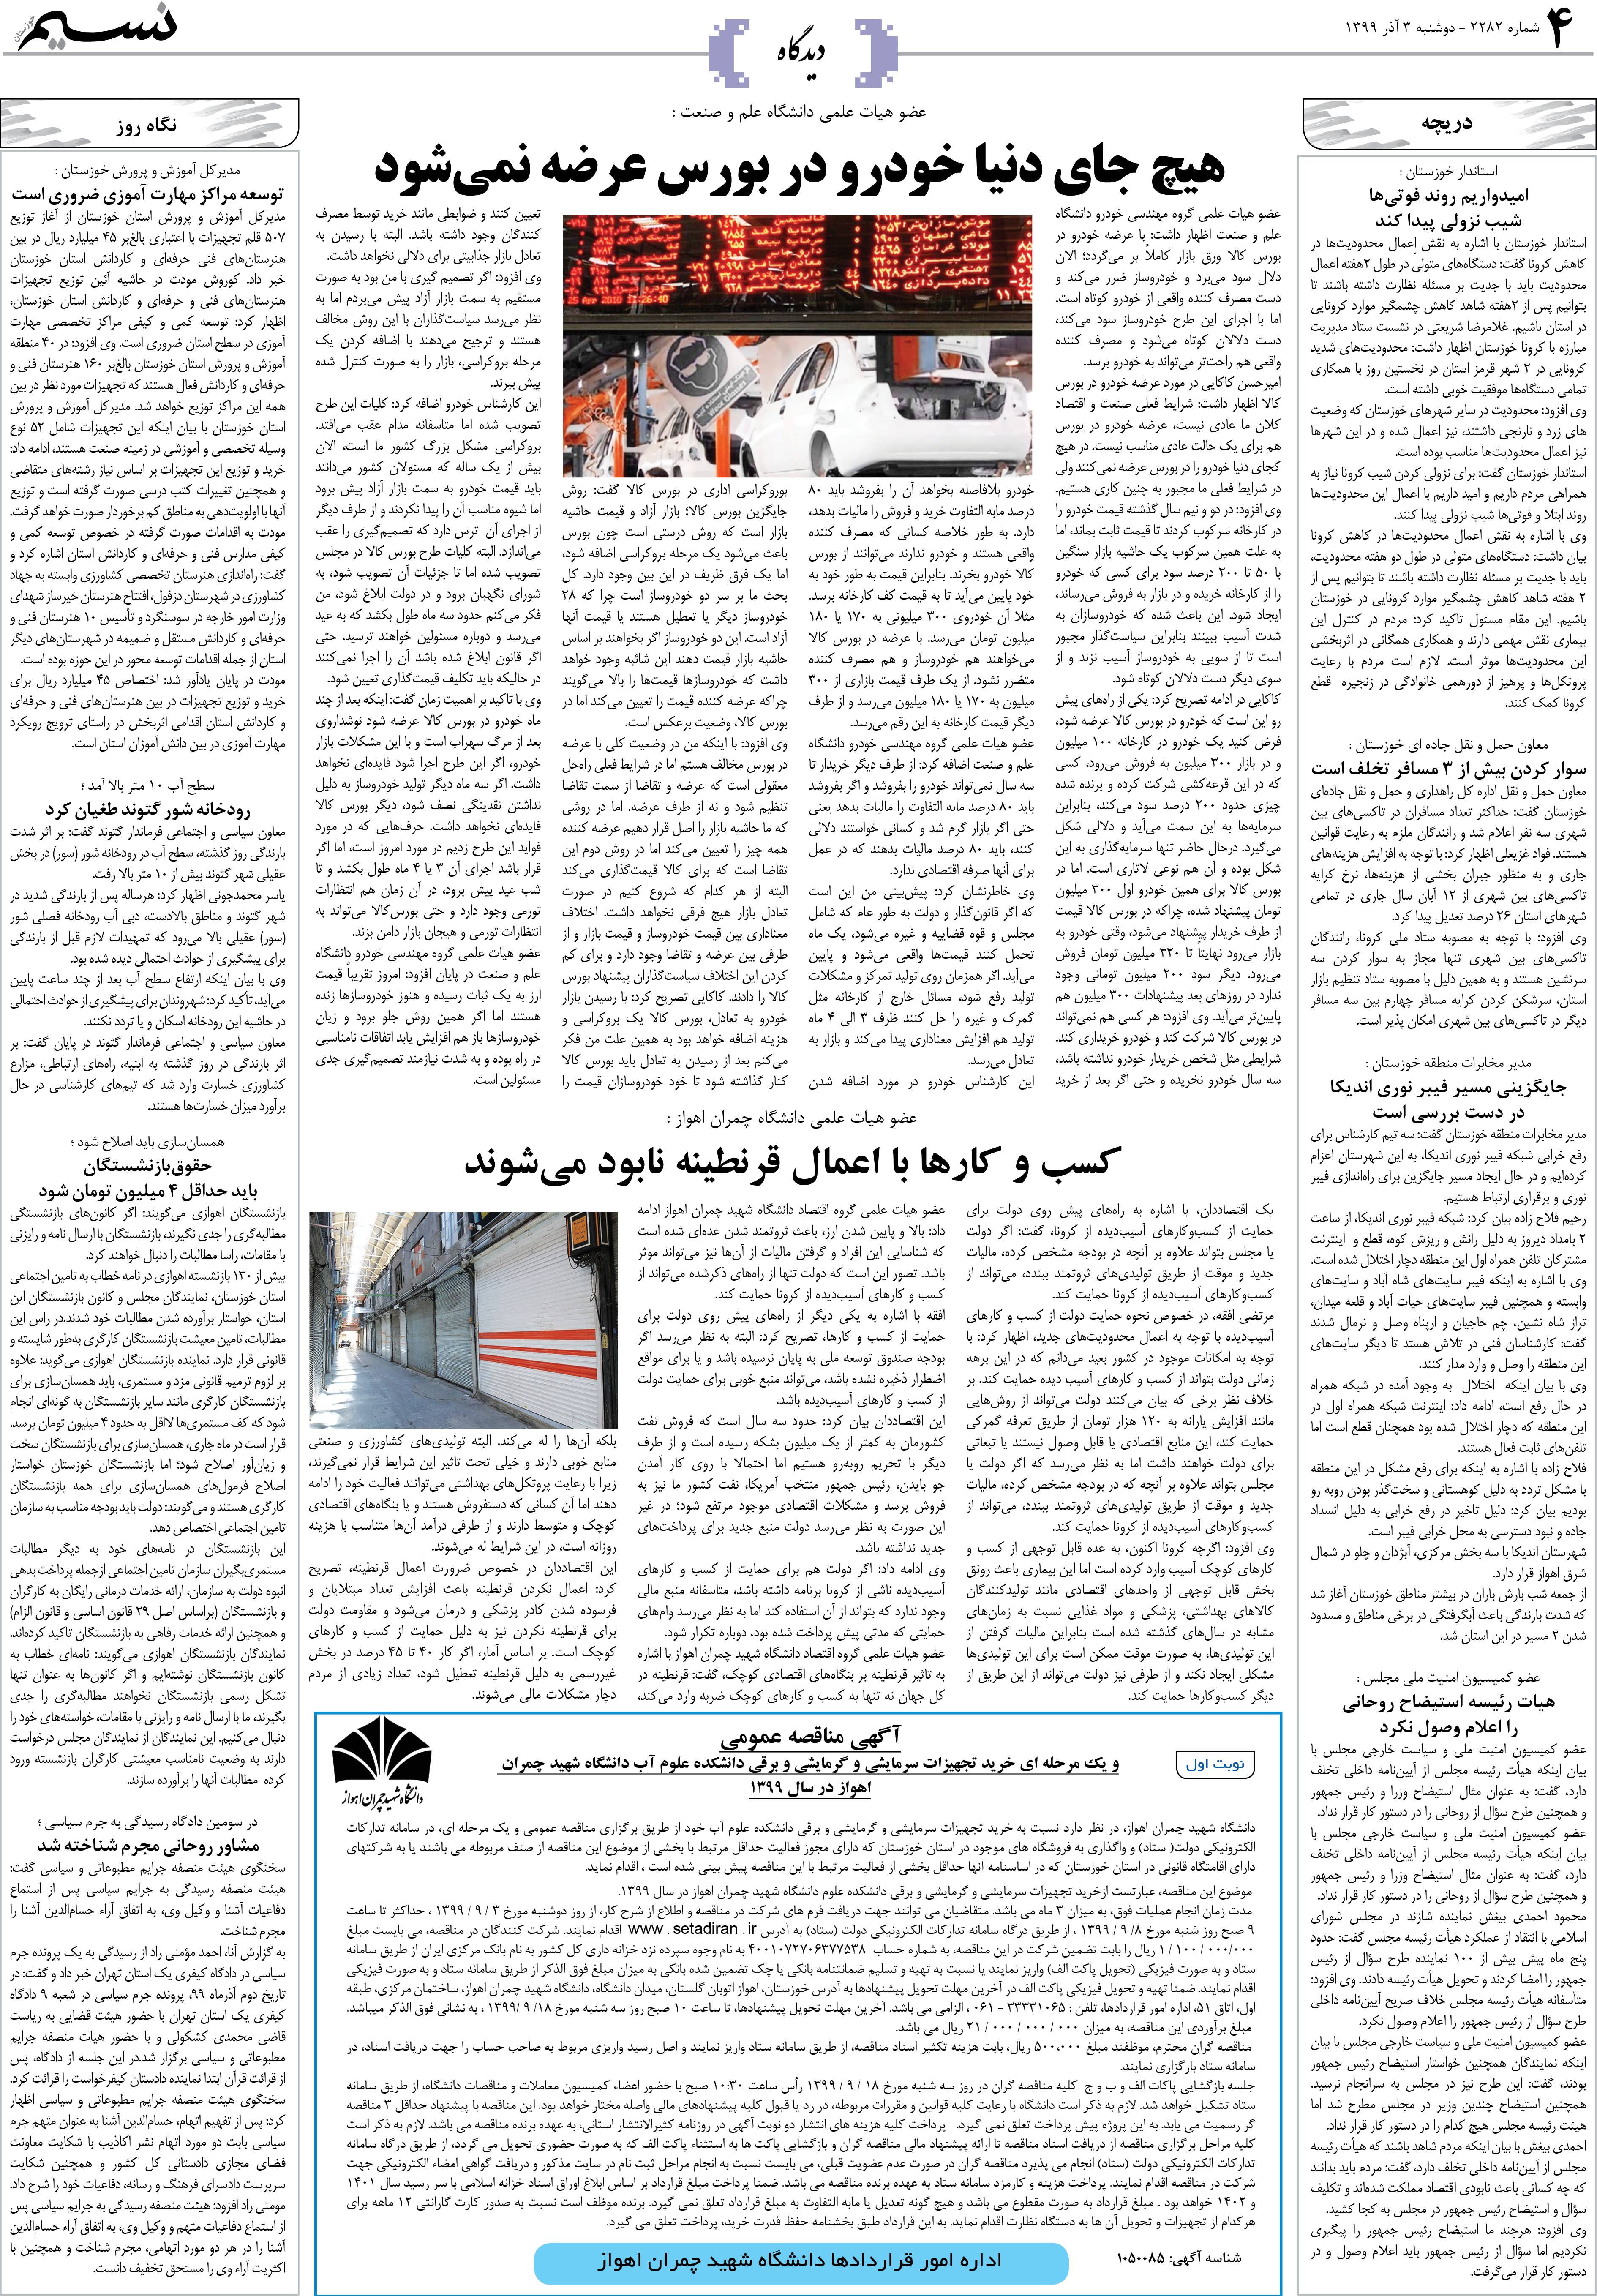 صفحه دیدگاه روزنامه نسیم شماره 2282